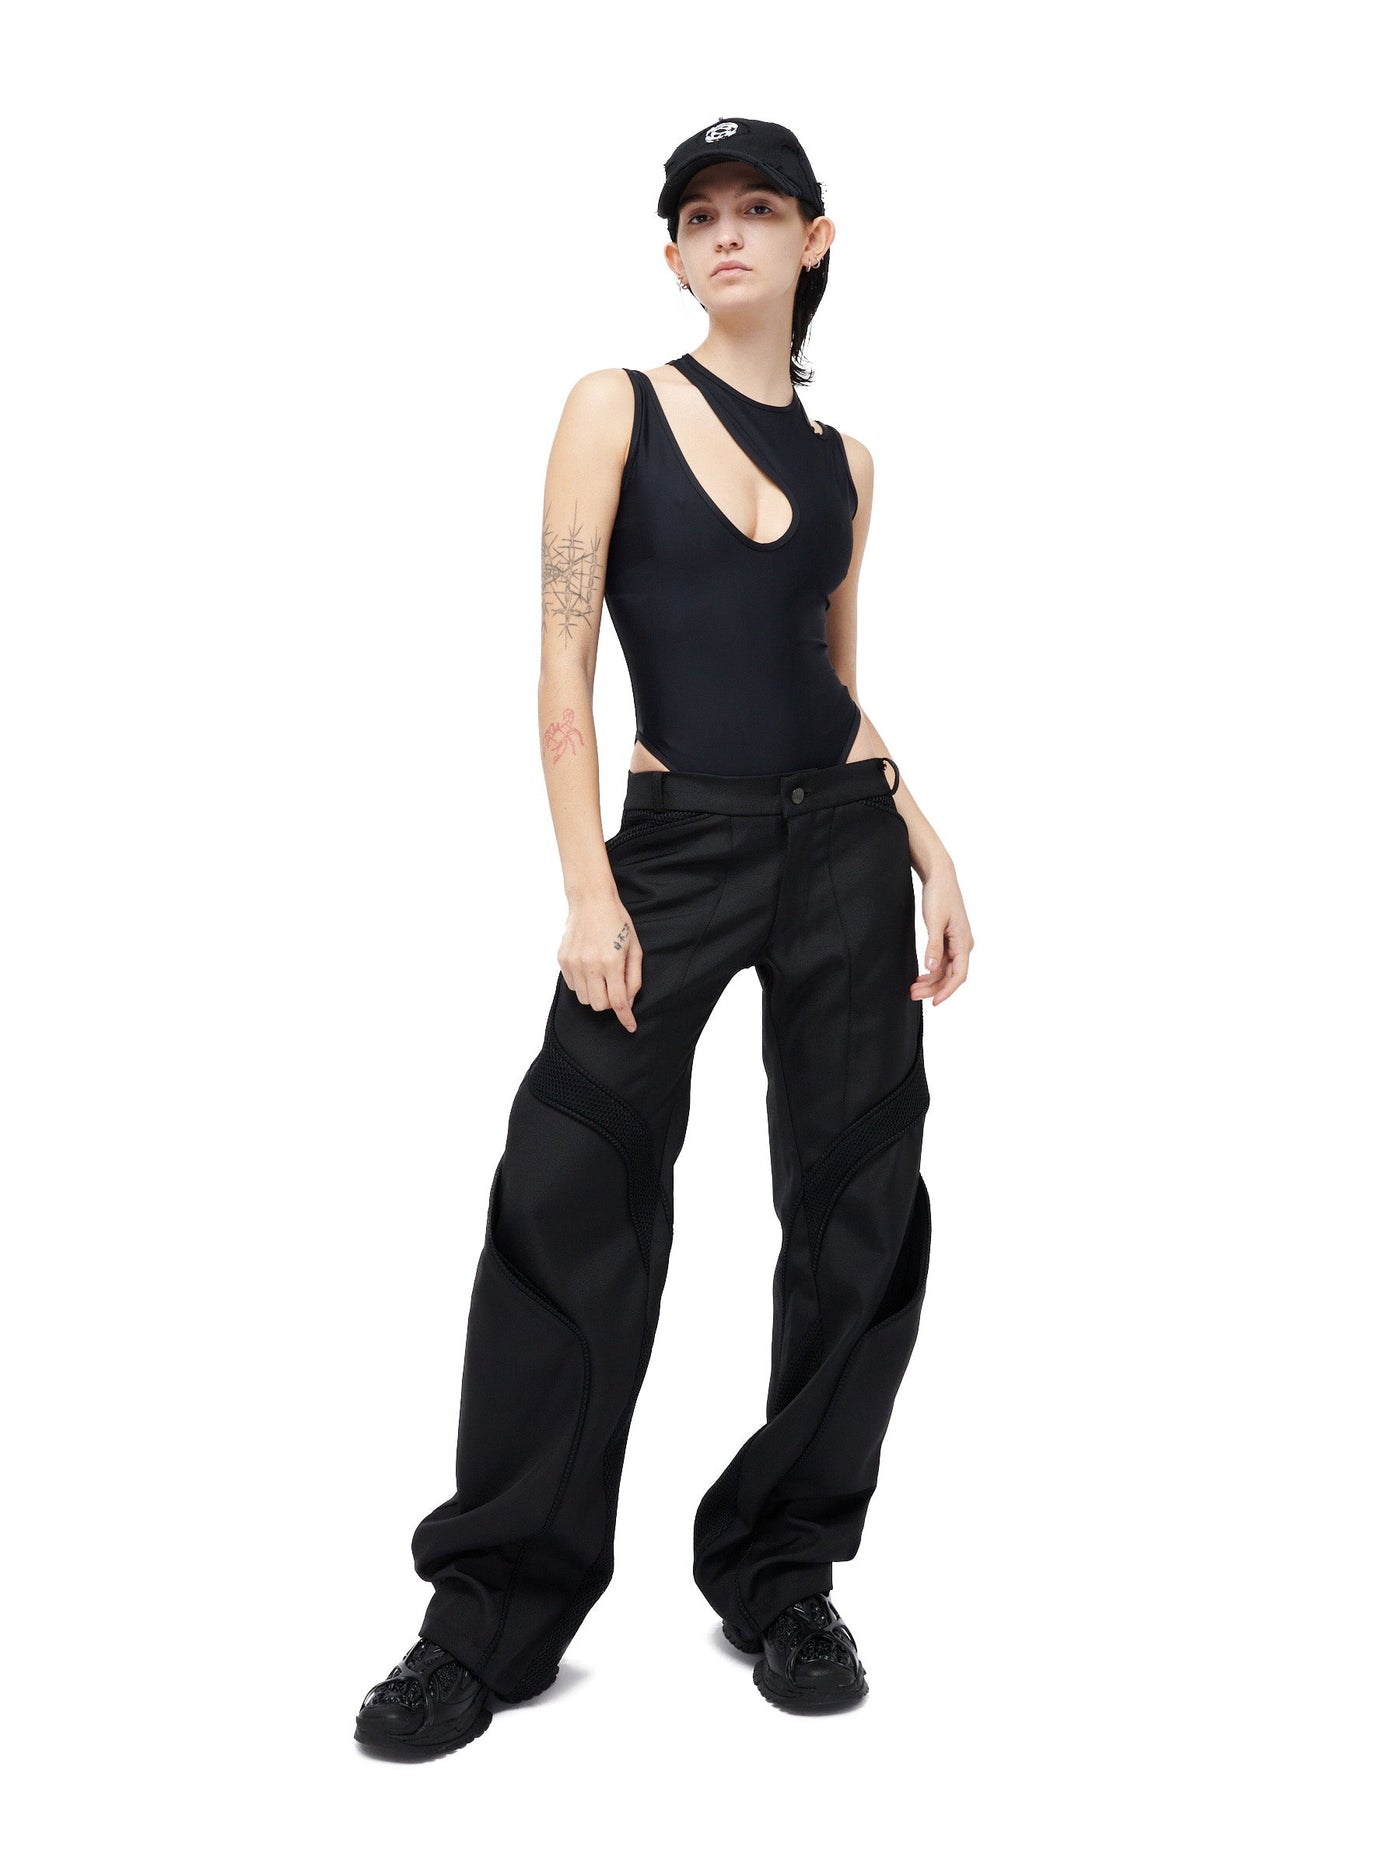 Infinity Black Bodysuit - Rombaut - Apparel for all genders – ROMBAUT